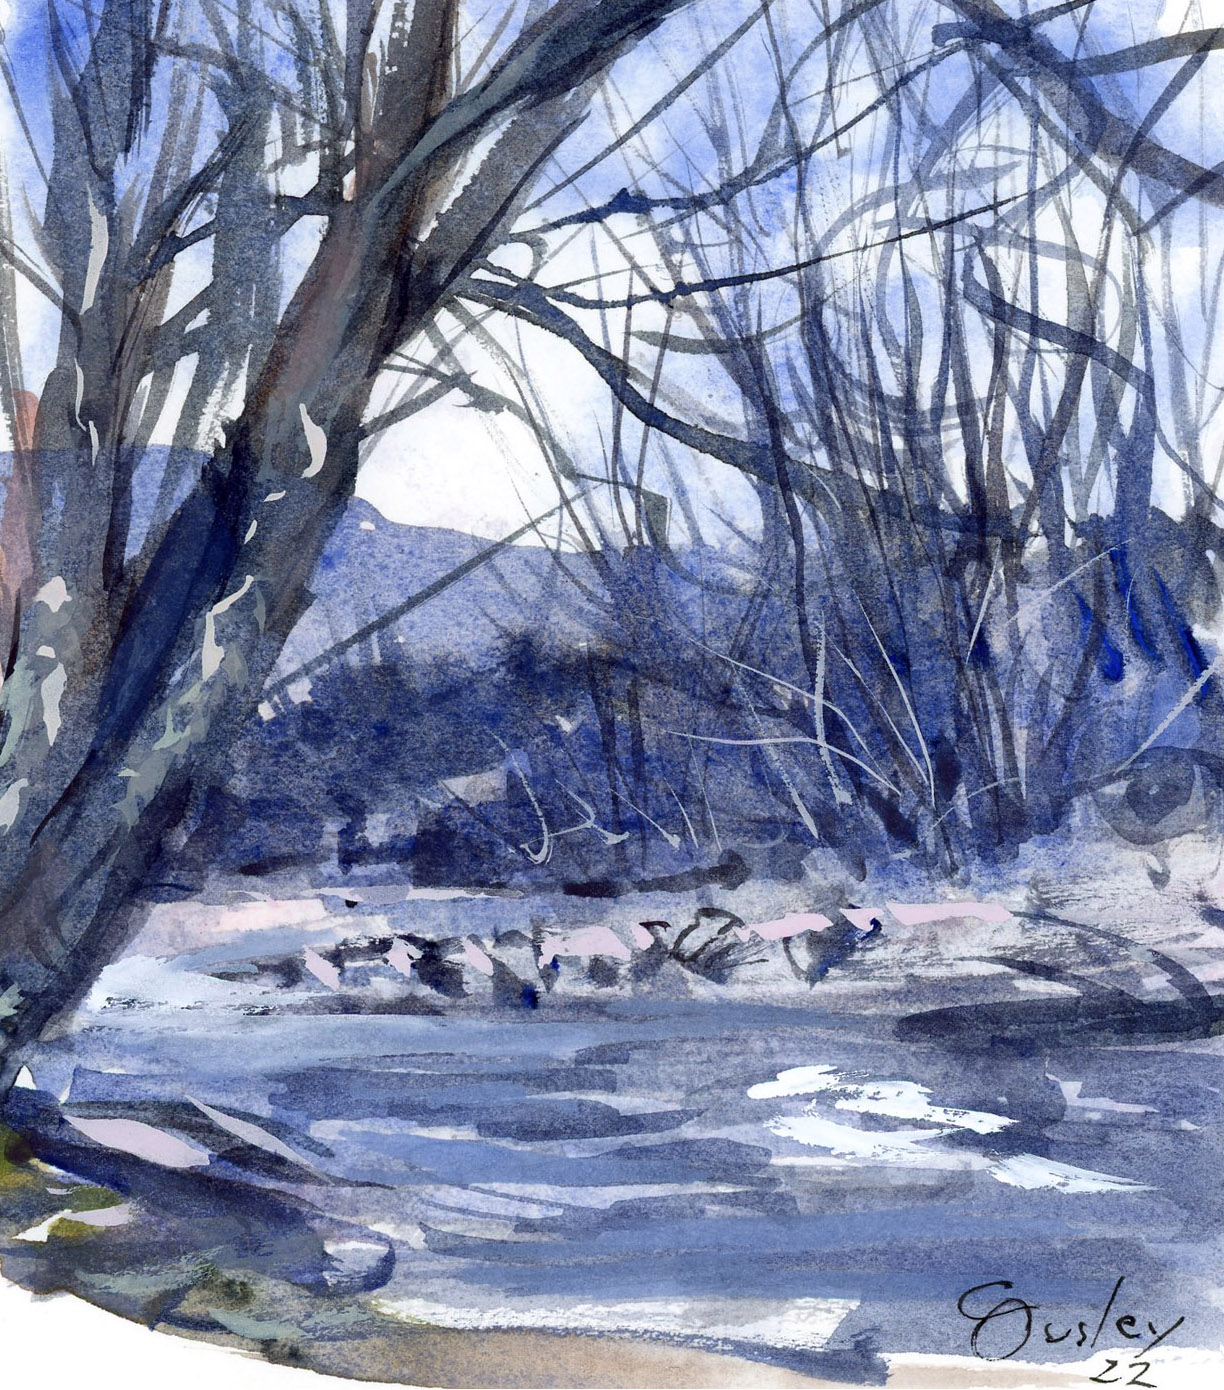 Pigeon River at Gatlinburg